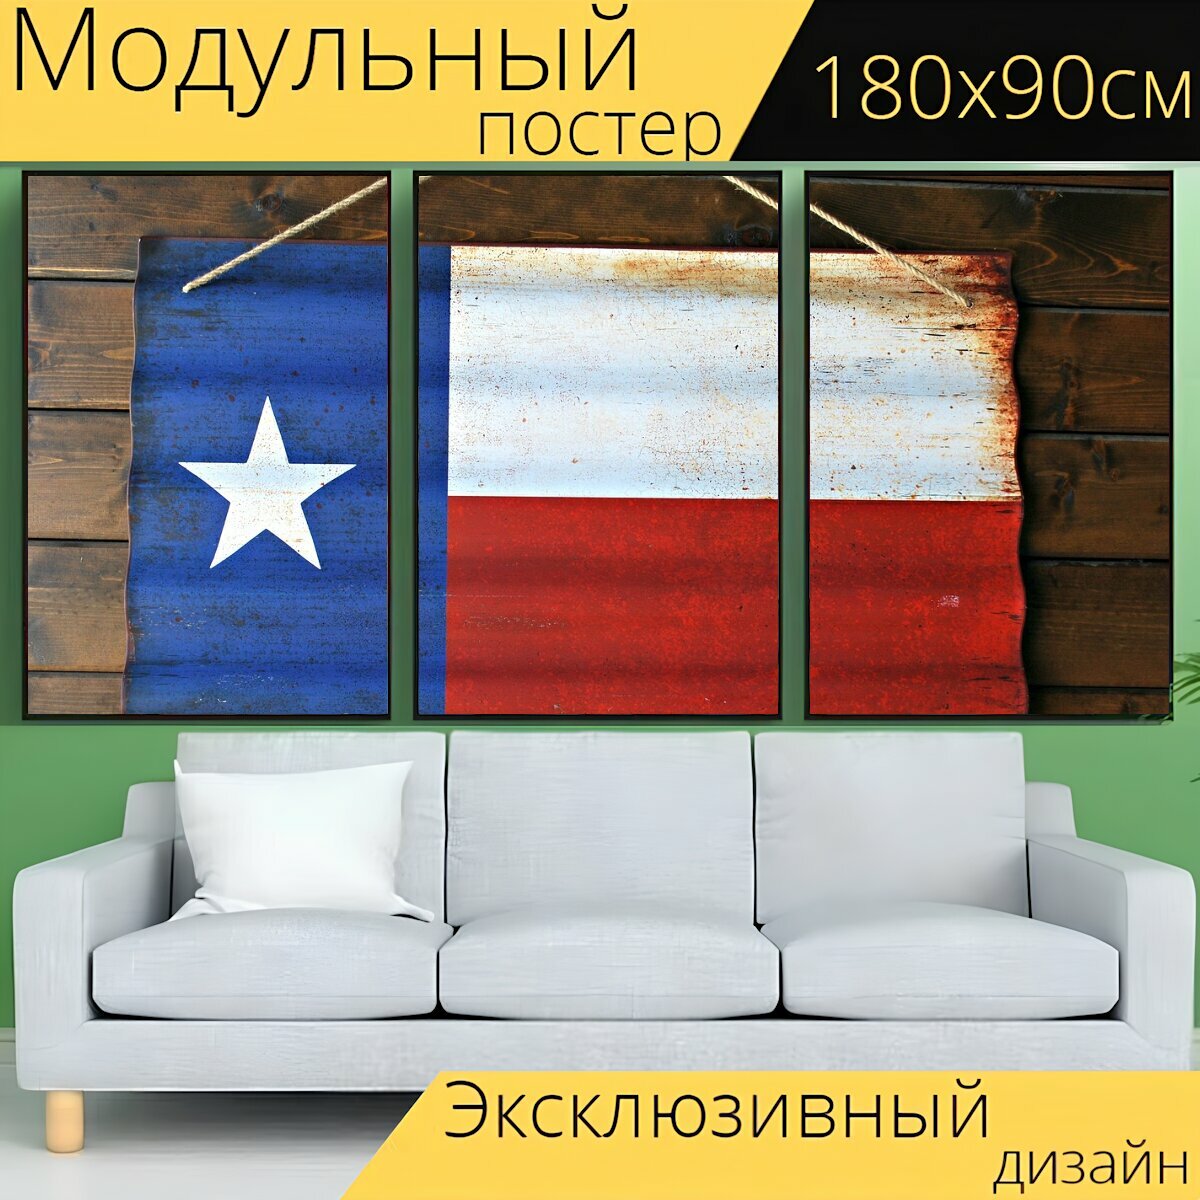 Модульный постер "Флаг, флаг техаса, техас" 180 x 90 см. для интерьера